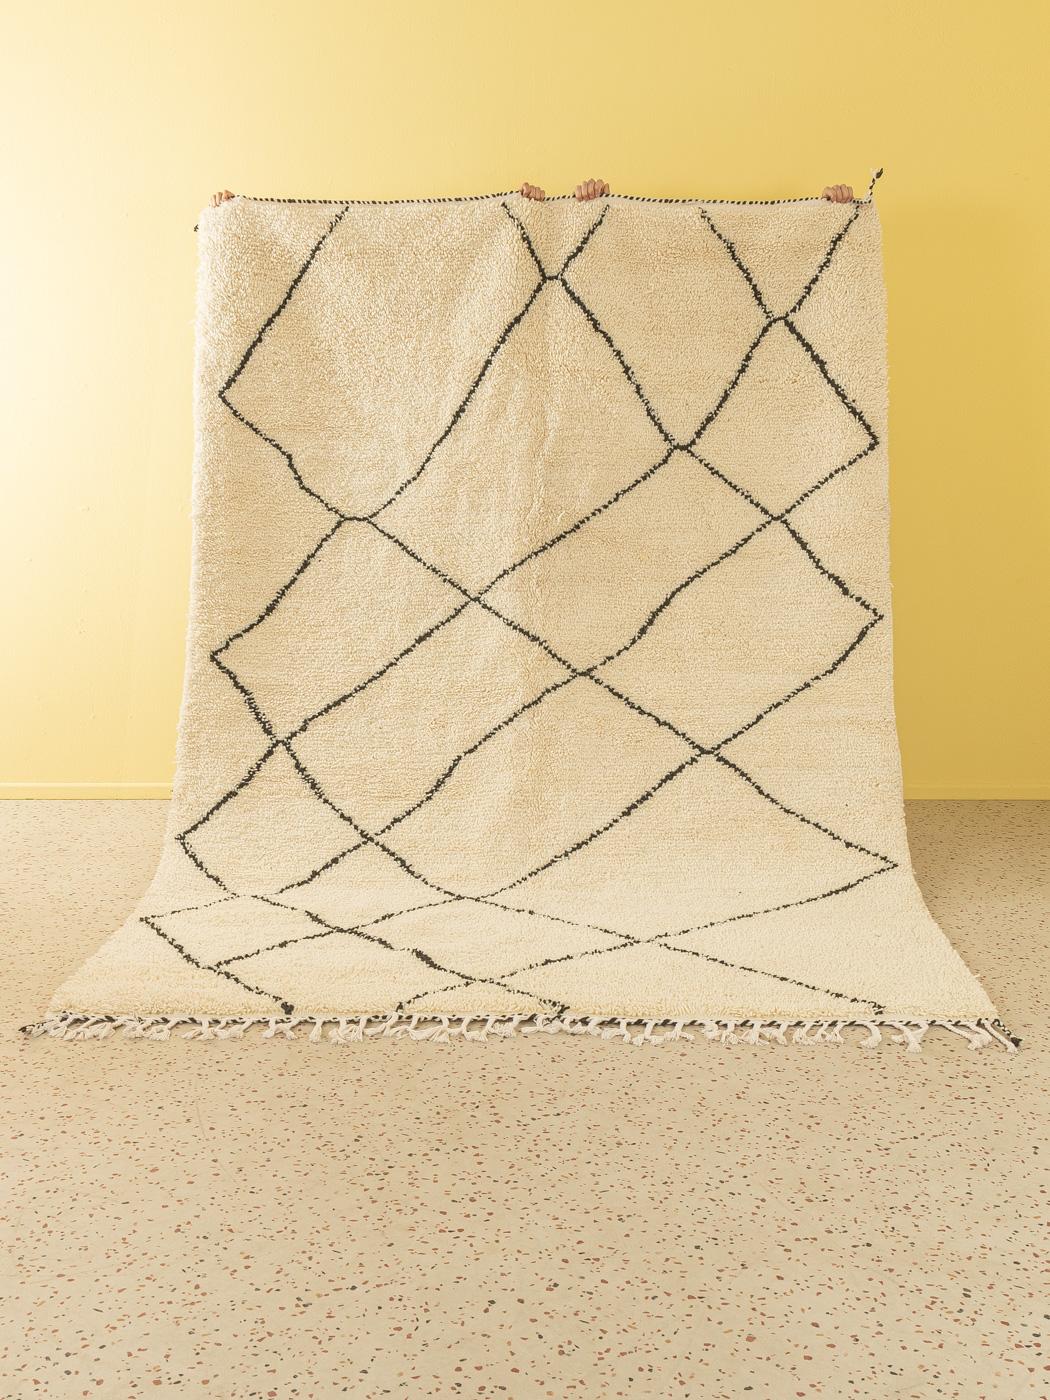 Home ist ein moderner Teppich aus 100% Wolle - dick und weich, angenehm zu tragen. Unsere Berberteppiche werden von Amazigh-Frauen im Atlasgebirge handgewebt und handgeknüpft. Diese Gemeinschaften stellen schon seit Tausenden von Jahren Teppiche